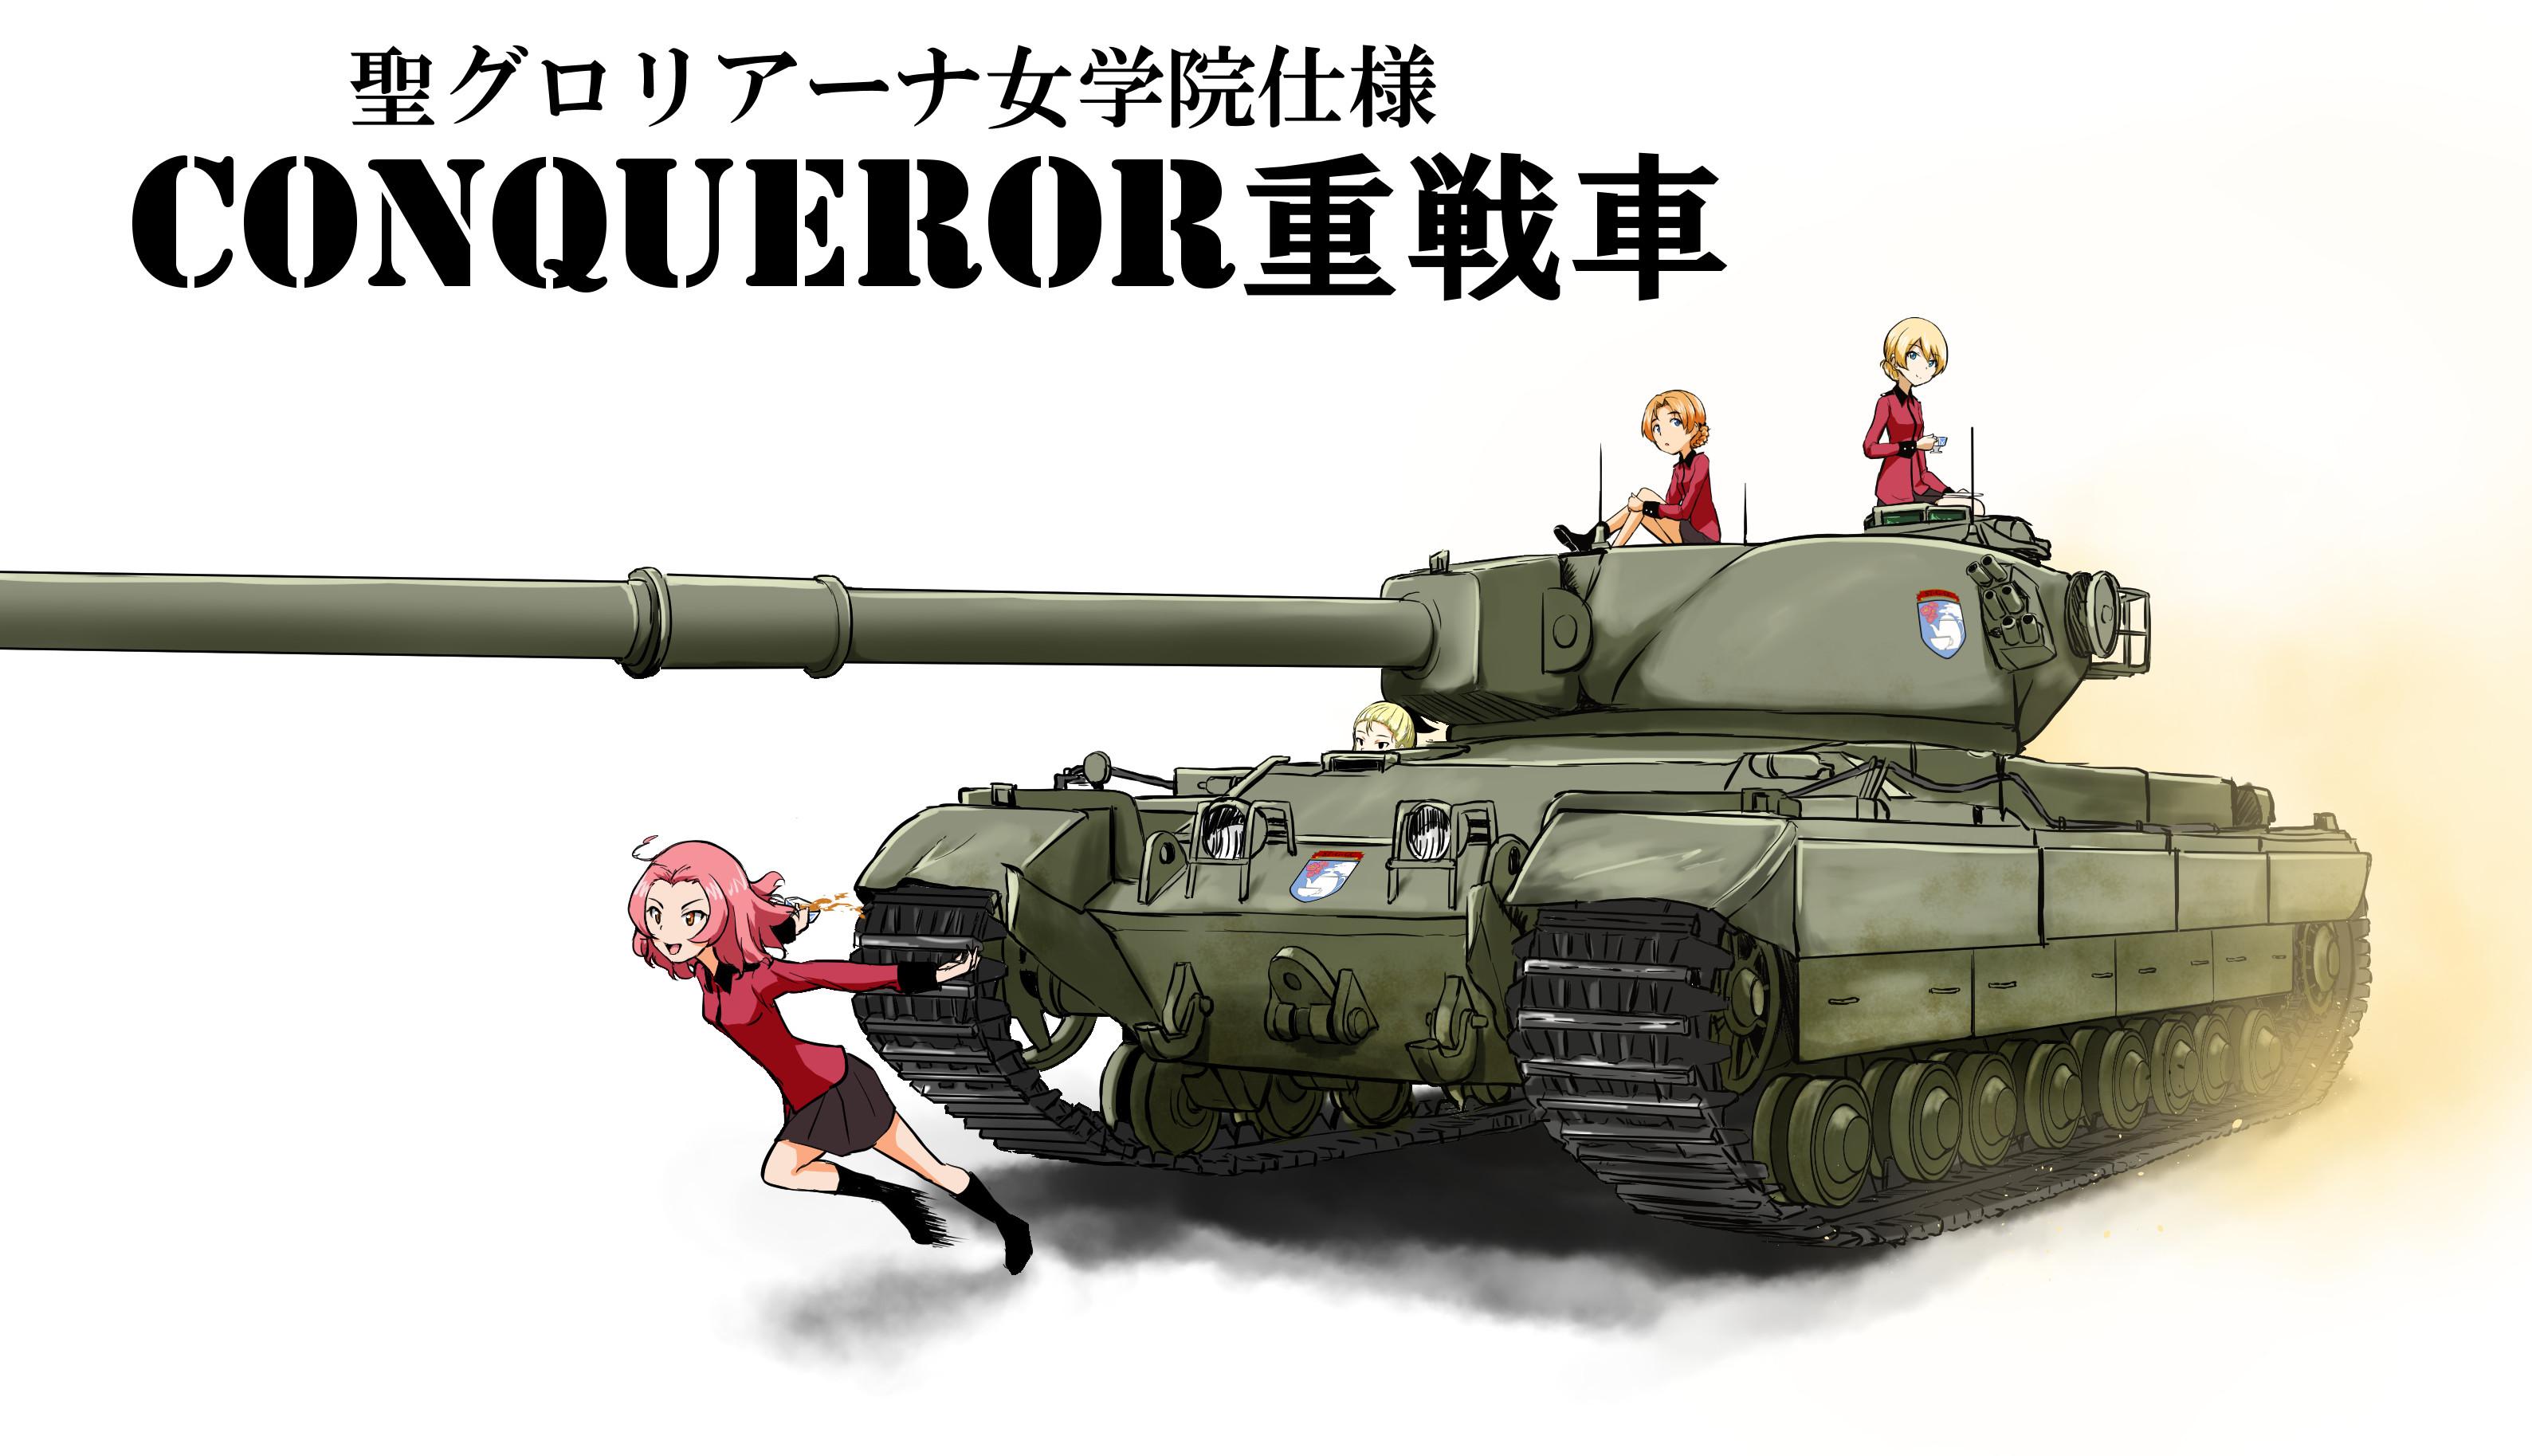 Girls Und Panzer Wallpaper background picture